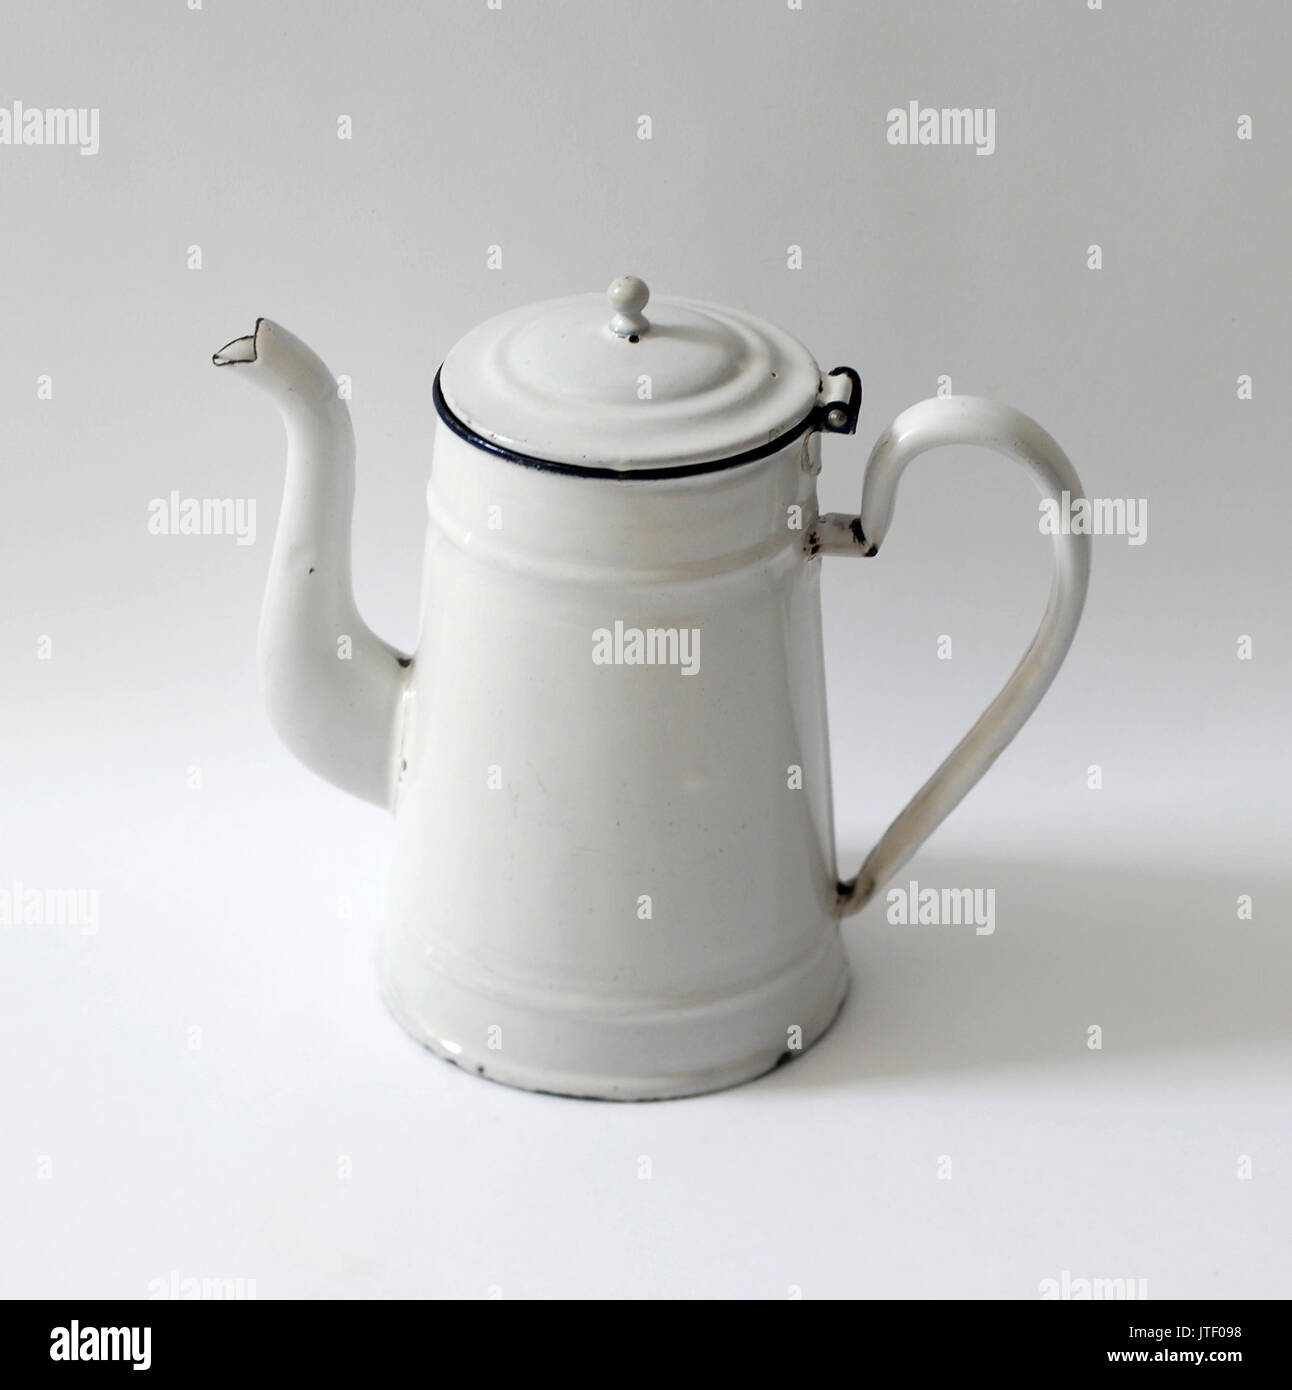 https://c8.alamy.com/comp/JTF098/vintage-enameled-metal-kettle-jug-JTF098.jpg